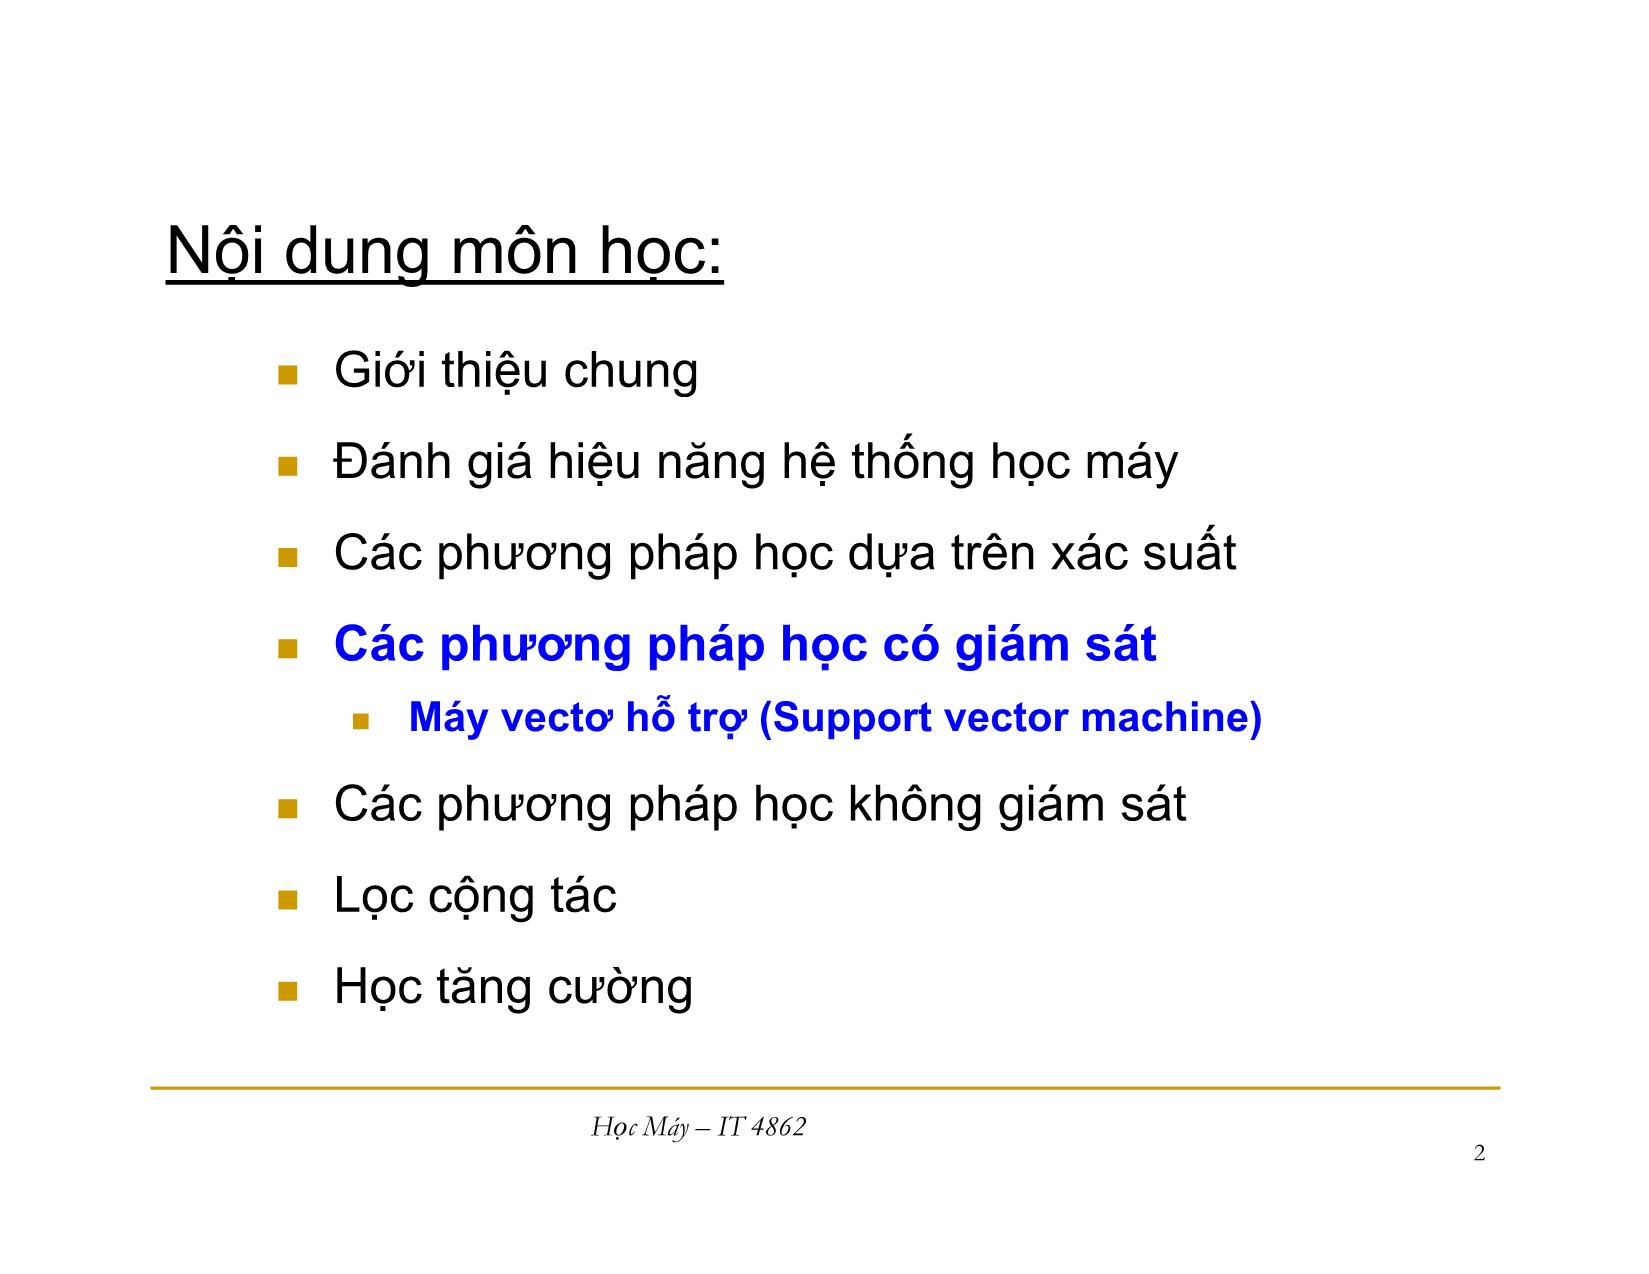 Bài giảng Học máy - Bài 9: Máy vecto hỗ trợ - Nguyễn Nhật Quang trang 2